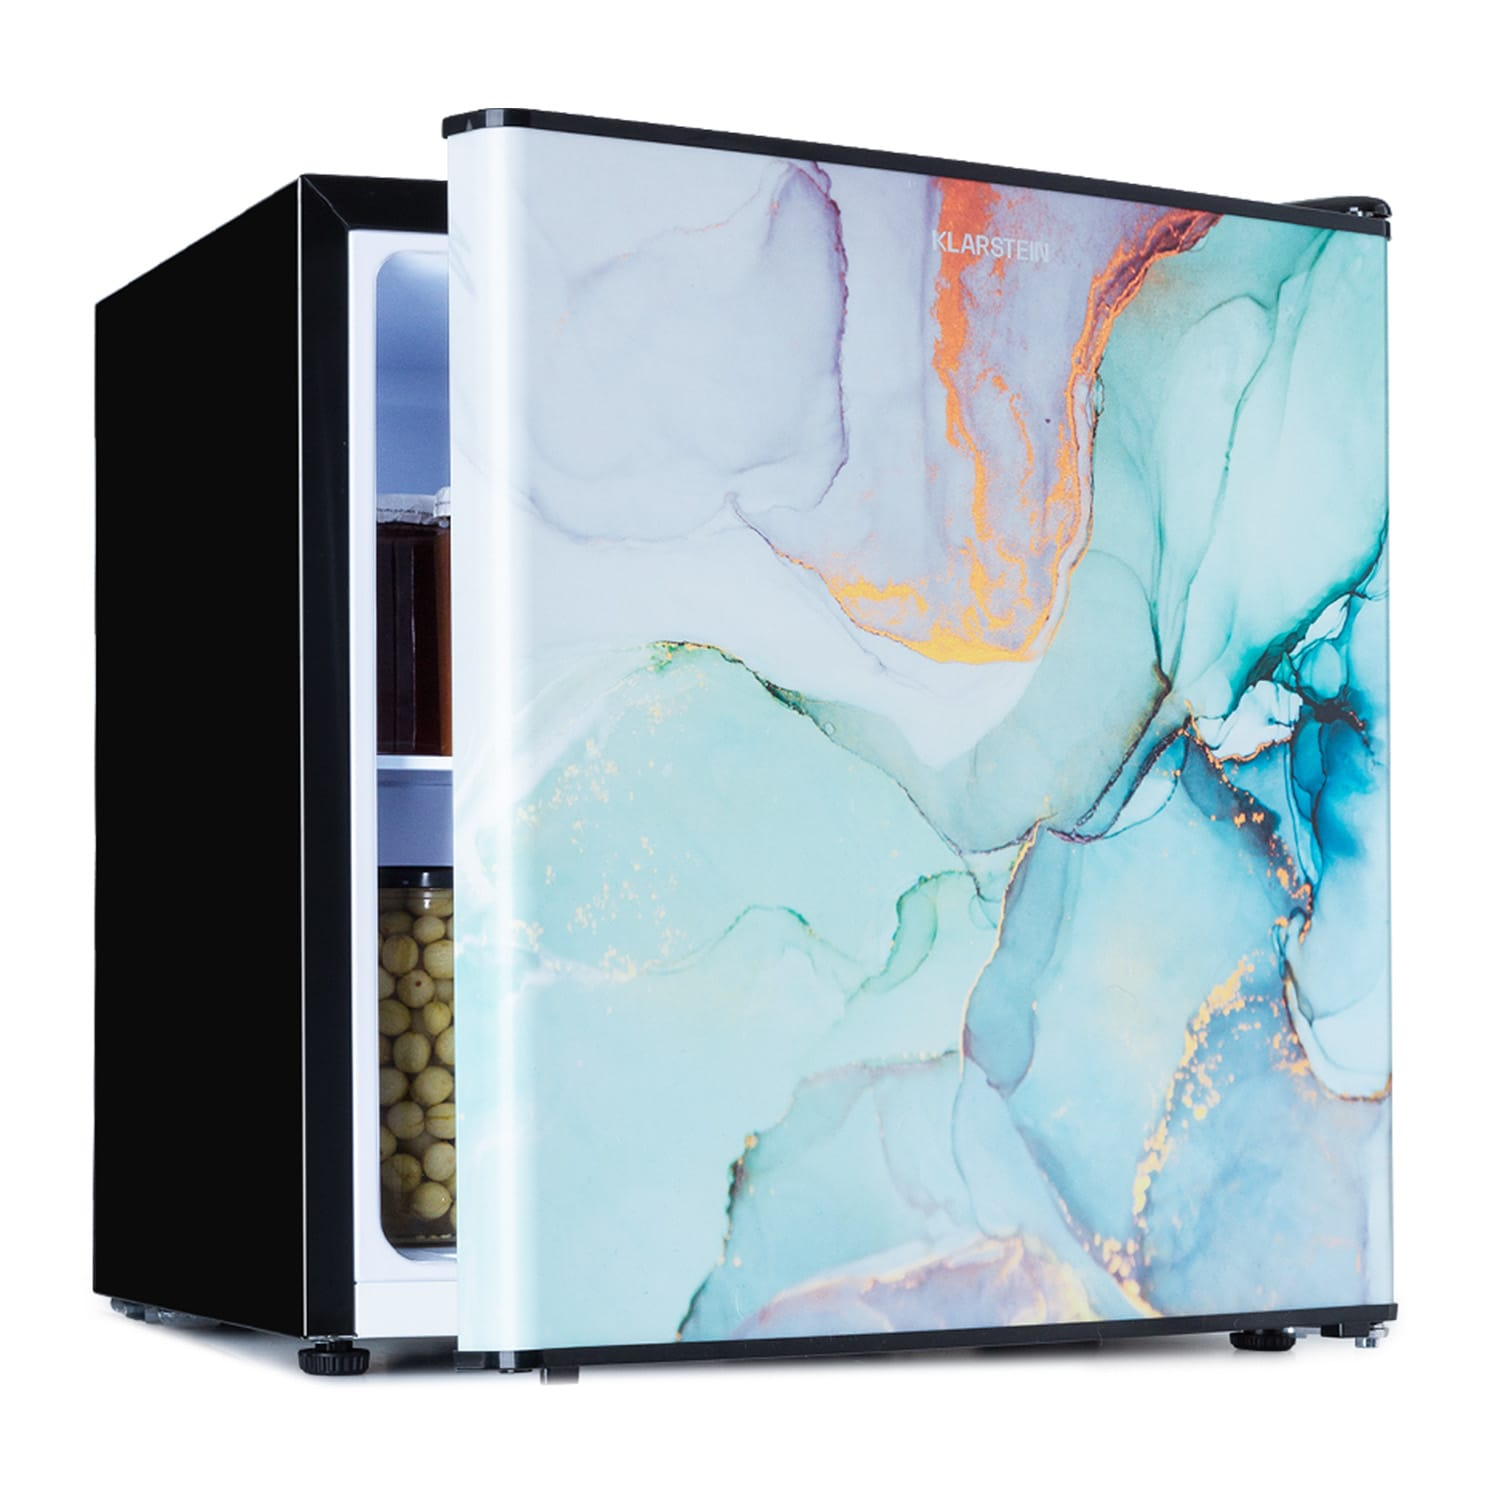 KLARSTEIN CoolArt 45L Mini-Kühlschrank (F, 44,5 cm hoch, Multicolor)